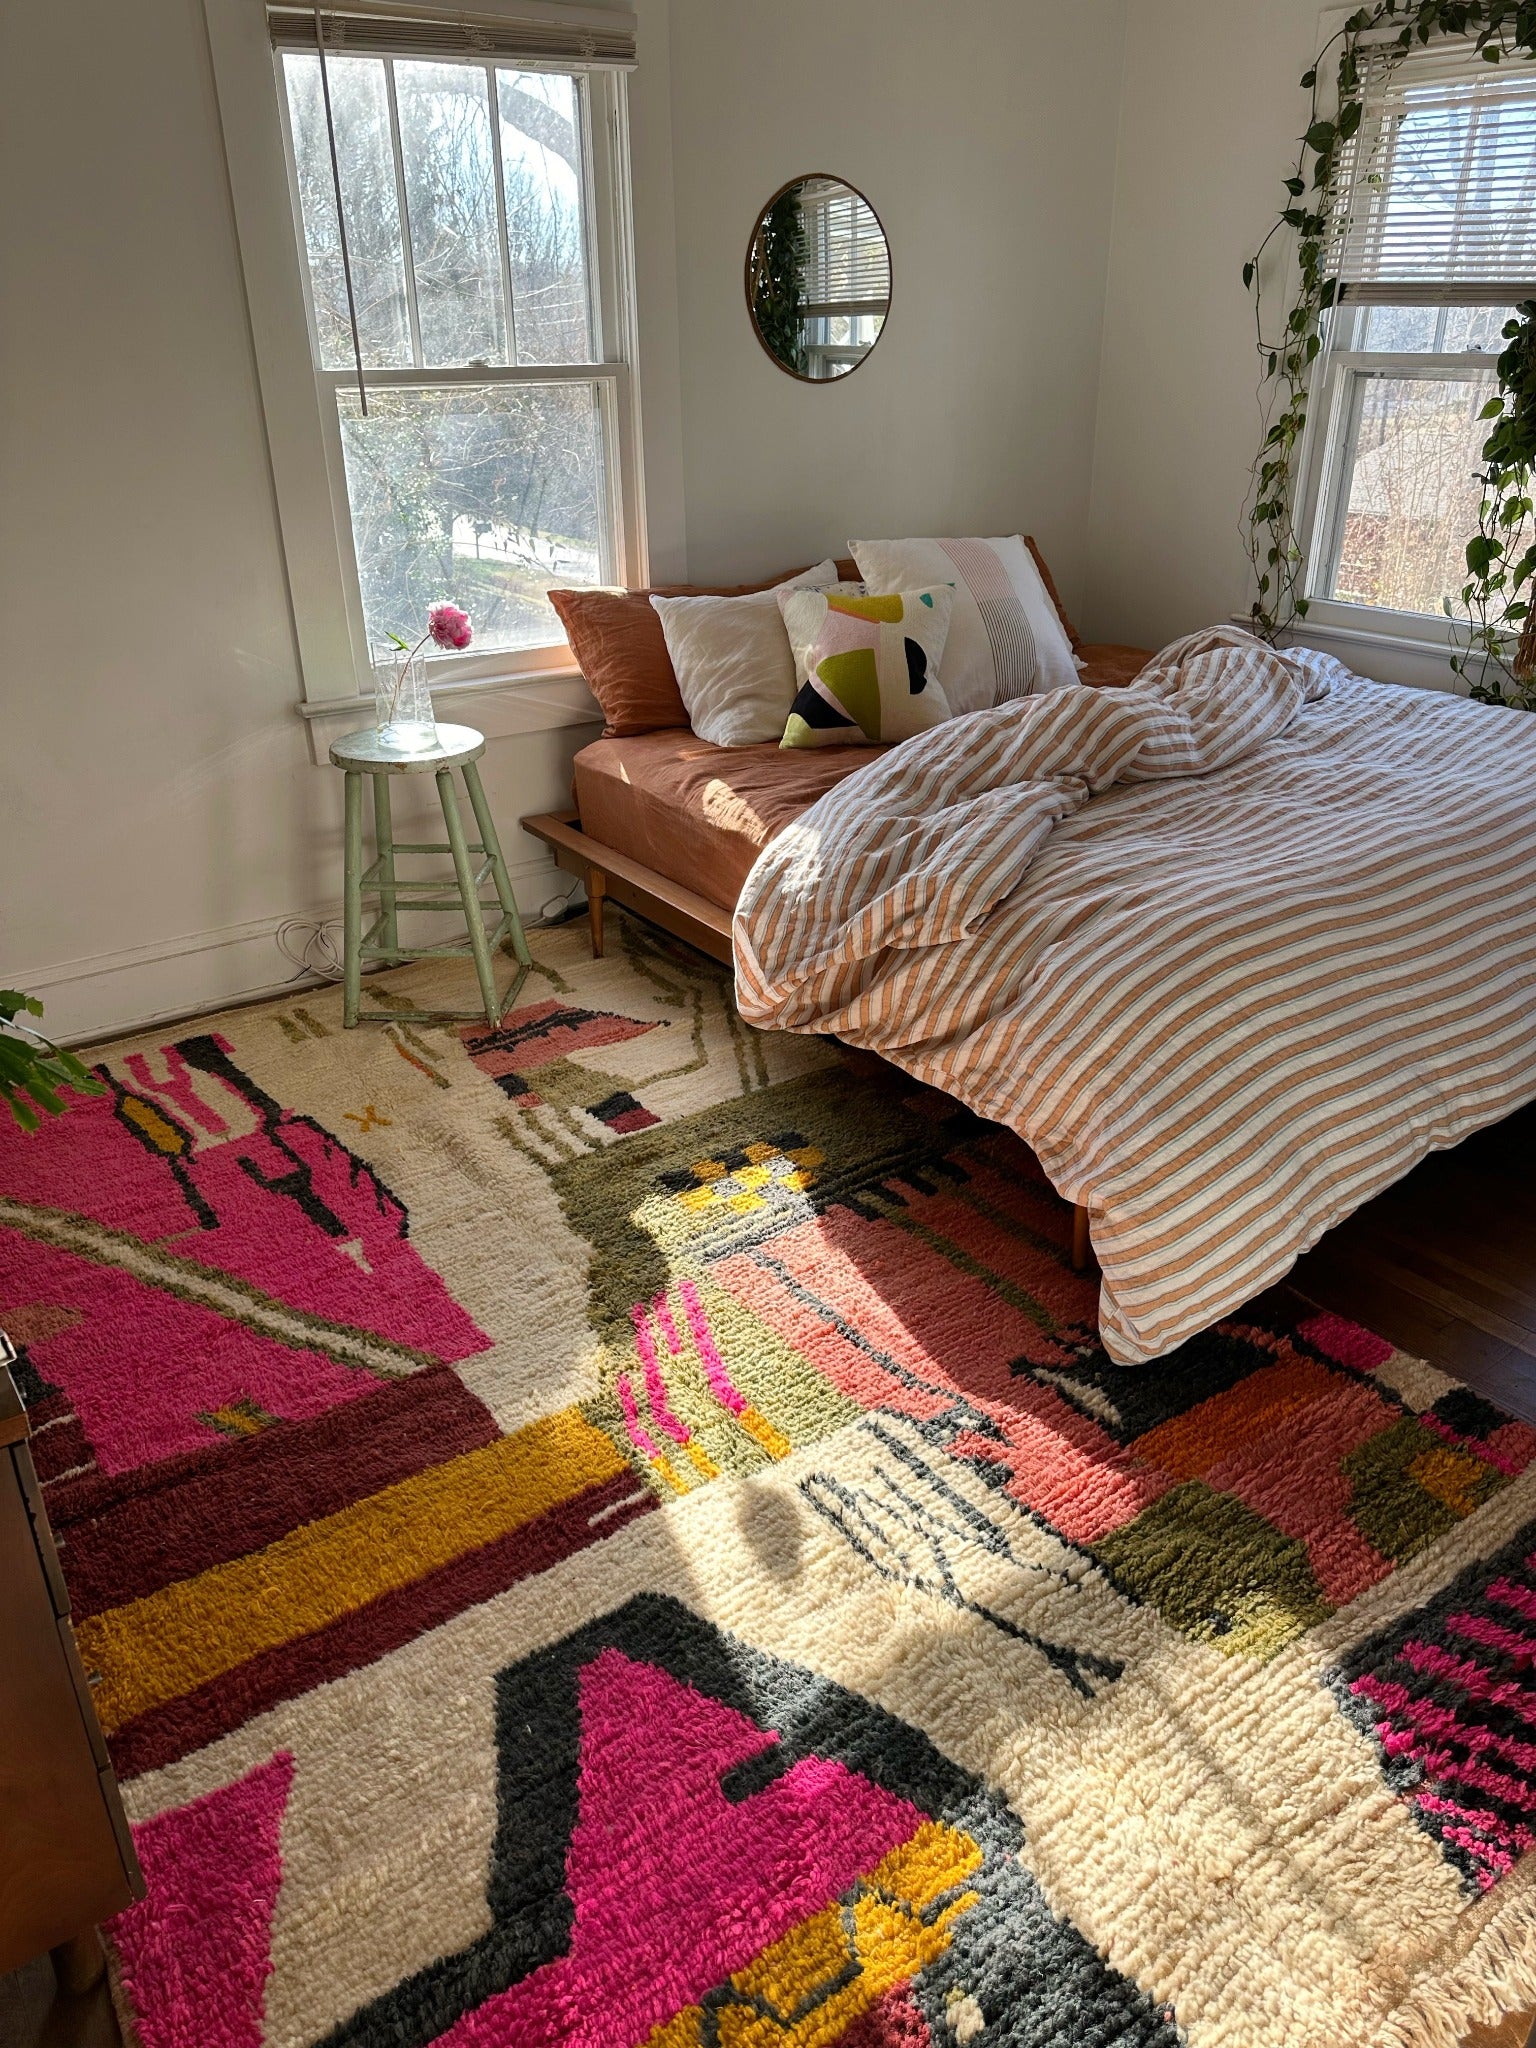 Style Ciolo Moroccan Rug in a Bedroom